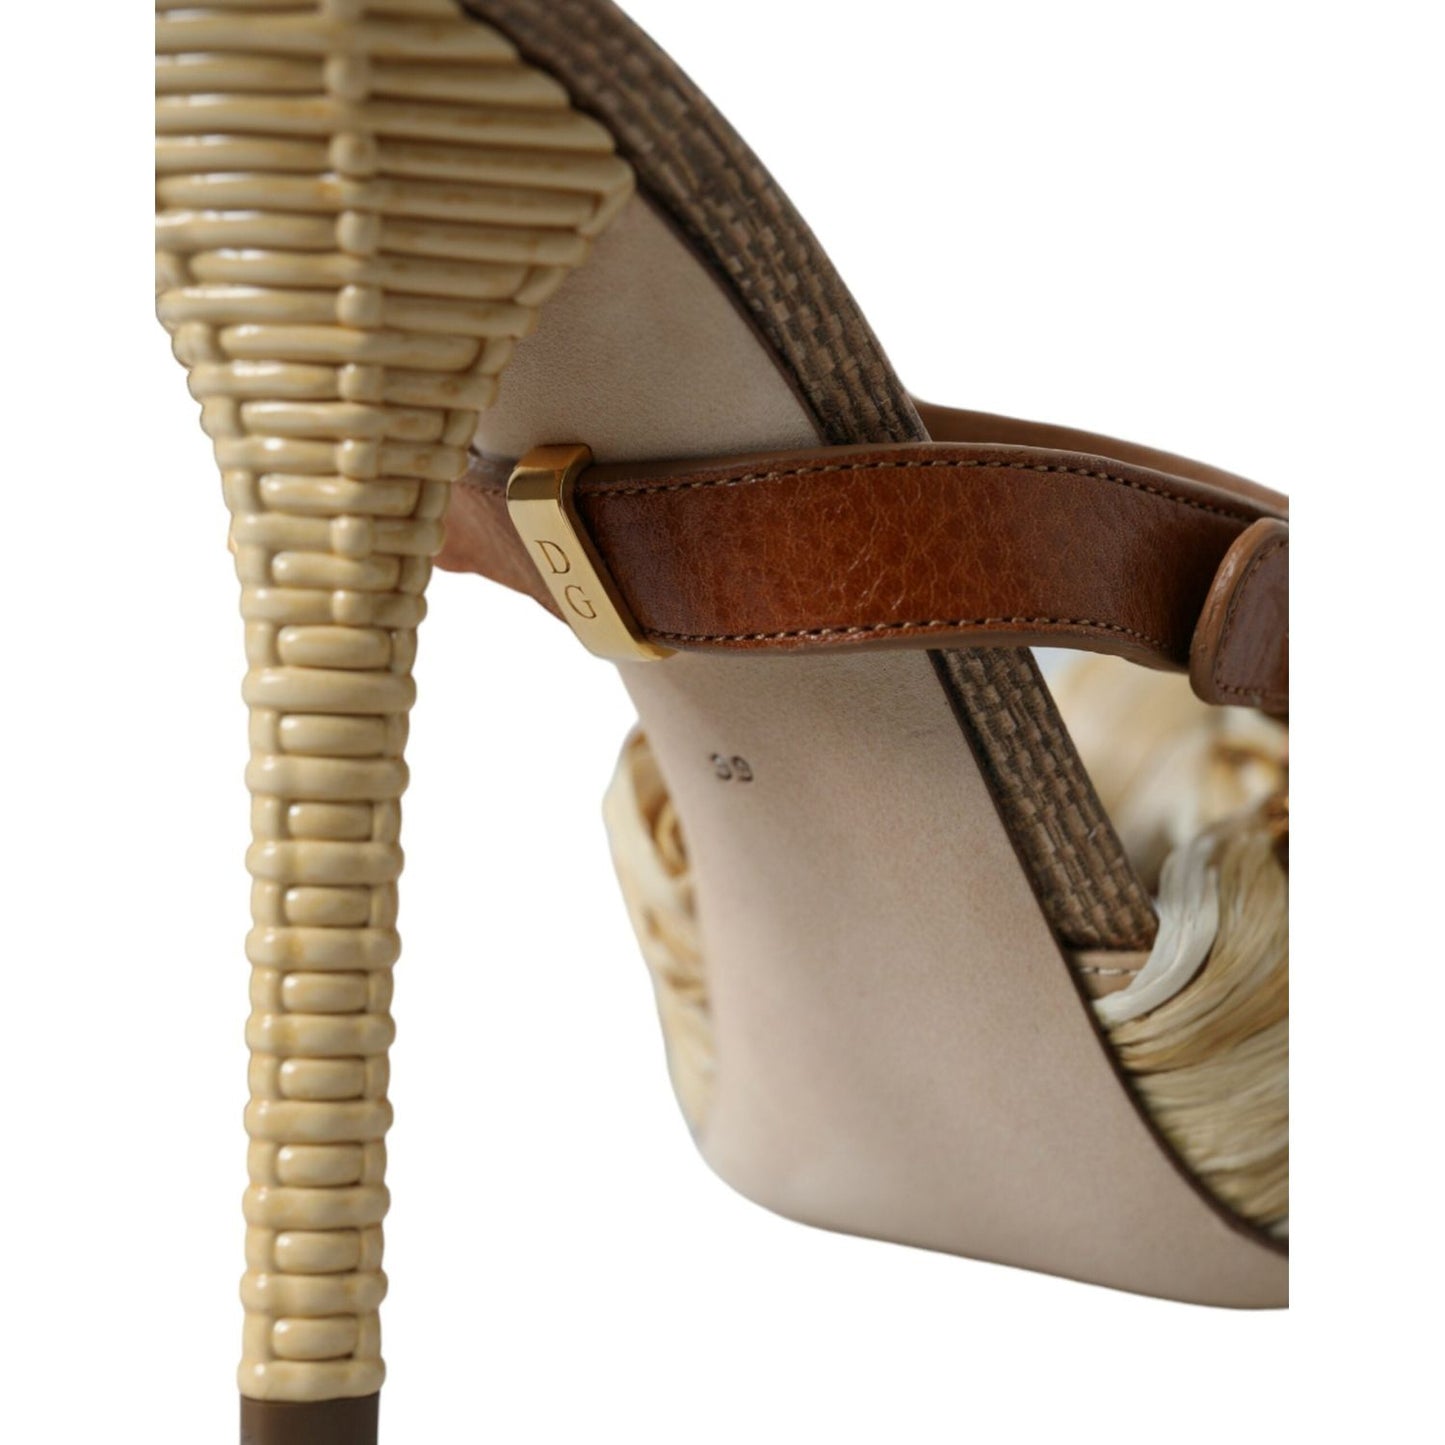 Dolce & Gabbana Multicolor Crystal Slides Heels Sandals Shoes multicolor-crystal-slides-heels-sandals-shoes-1